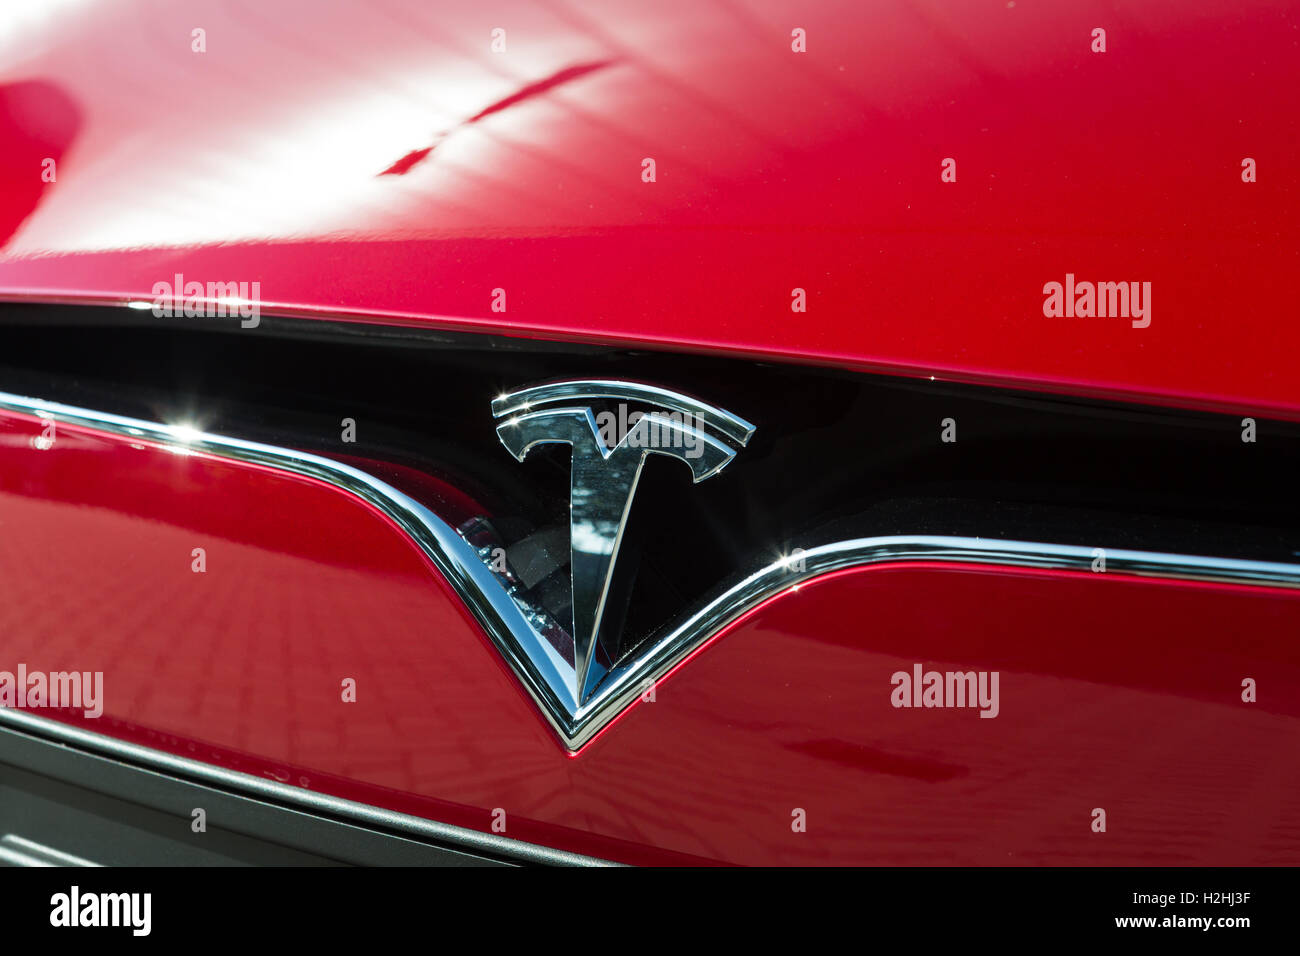 TILGURG, Pays-Bas - 25 septembre 2016 : MODÈLE TESLA-X. Détail sur le logo sur la roue. Tesla Motors Usine de montage à Tilburg, Pays-Bas Banque D'Images